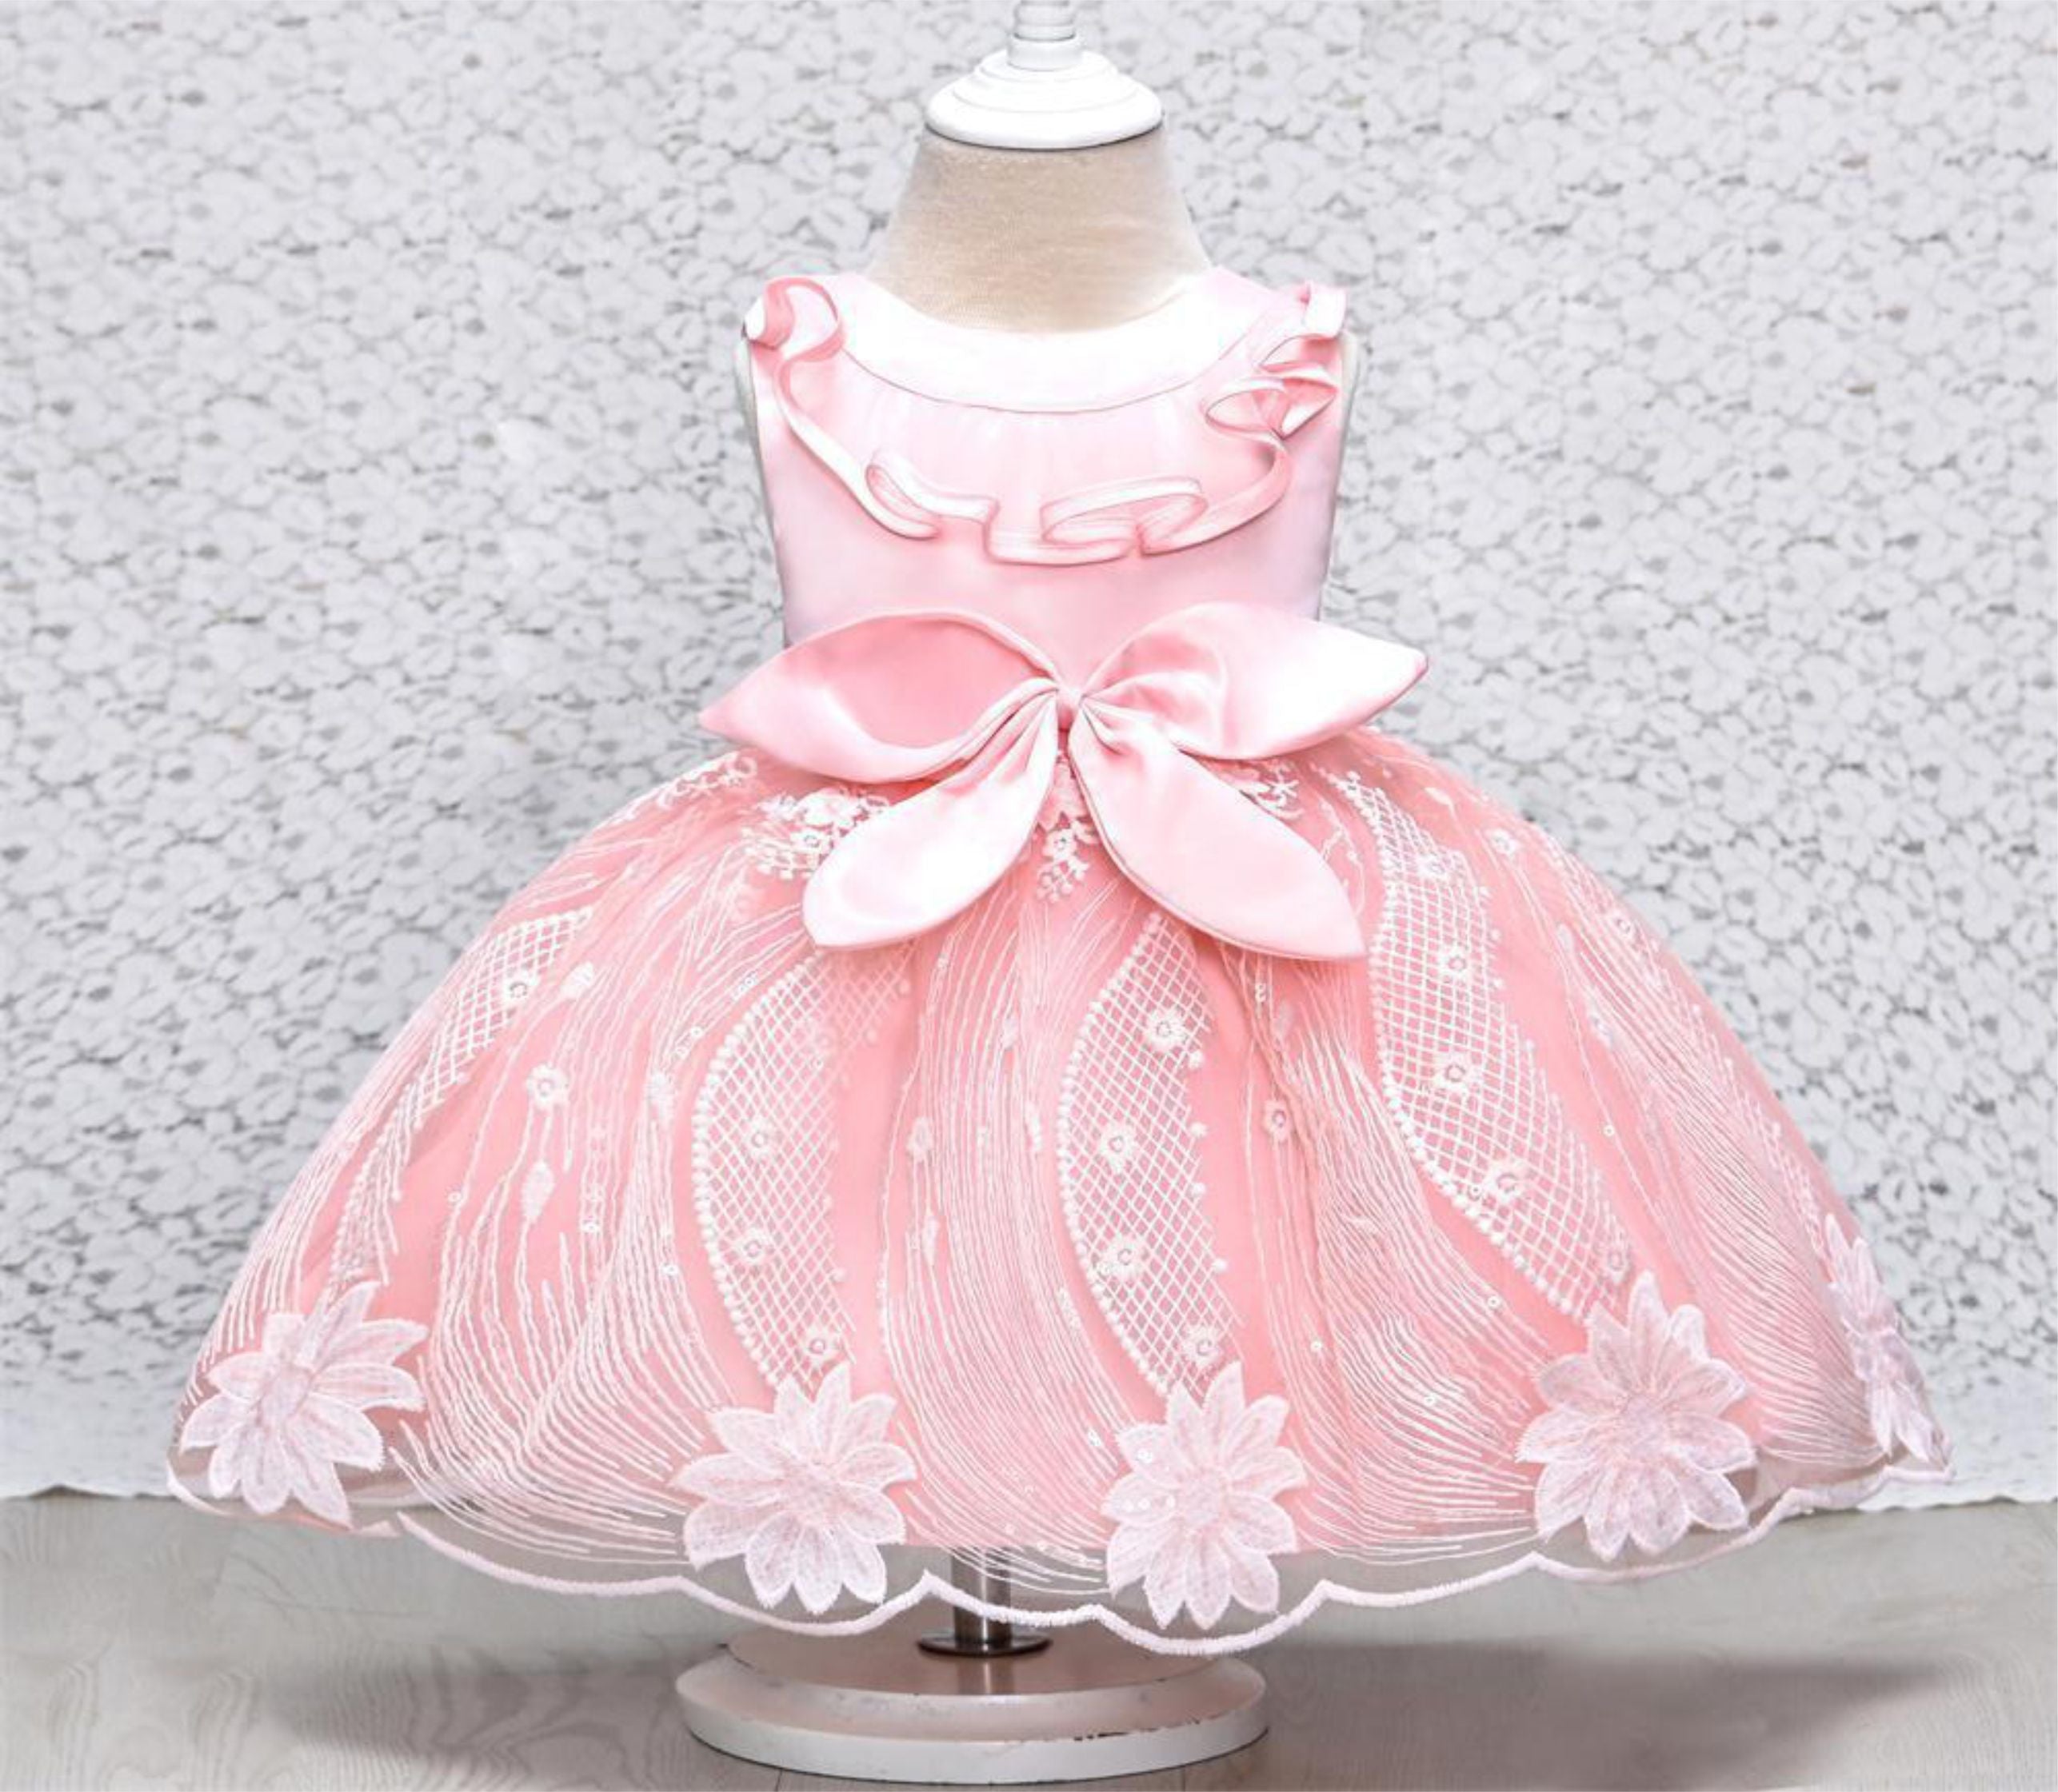 Baby Girl Dress Design: अपनी बेटी के लिए लेना चाहते हैं कोइ ड्रेस, तो चुने  ये स्टाइलिश डिजाइन - Baby Girl Dress Design to Gives Your Daughter a  Stylish Look